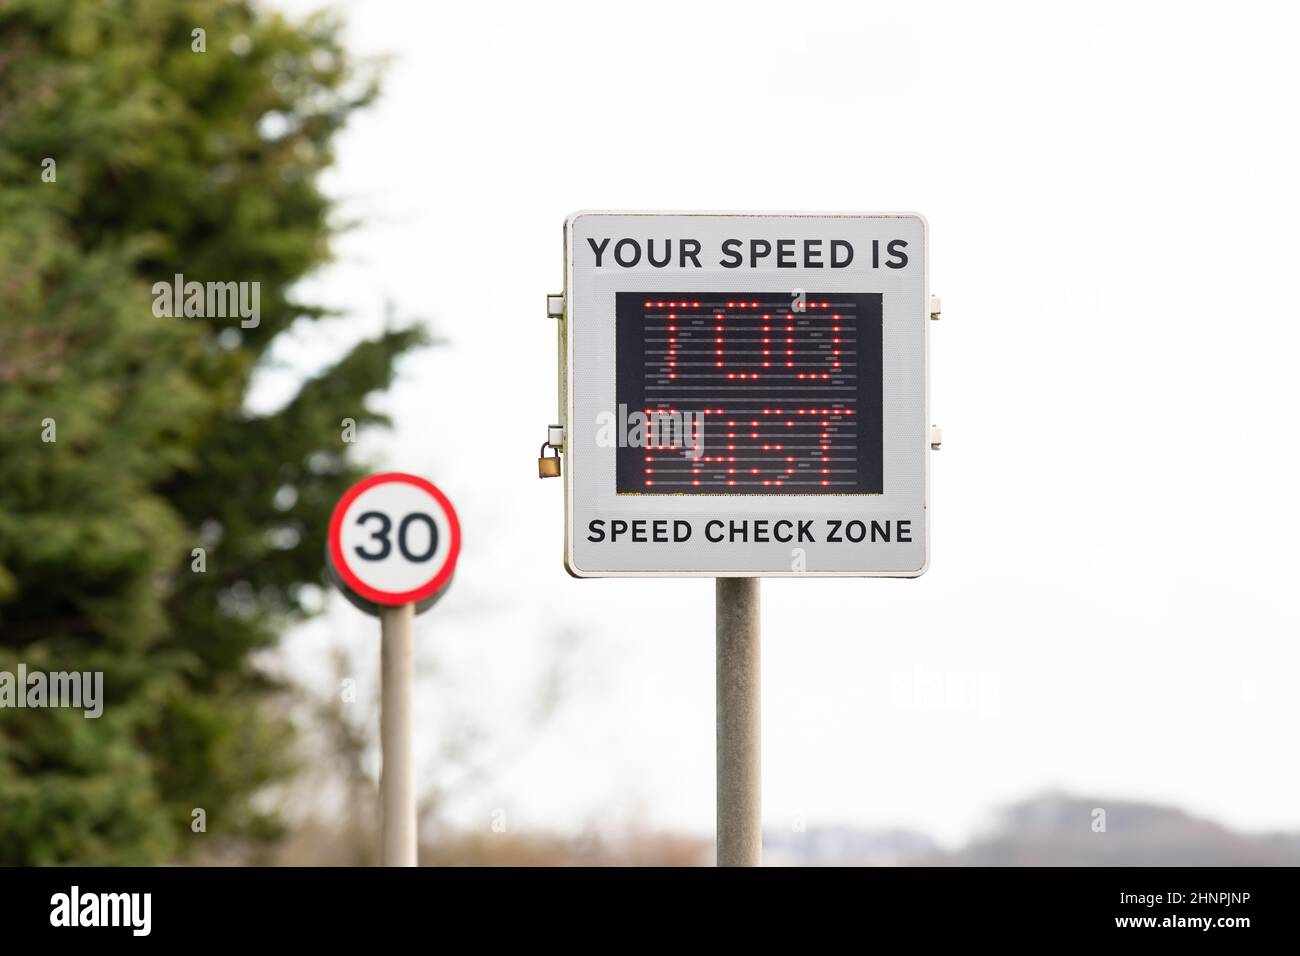 Vitesse dans 30mph zones - indicateur de vitesse activé par le véhicule affichant le message « votre vitesse est trop rapide » - Angleterre, Royaume-Uni Banque D'Images